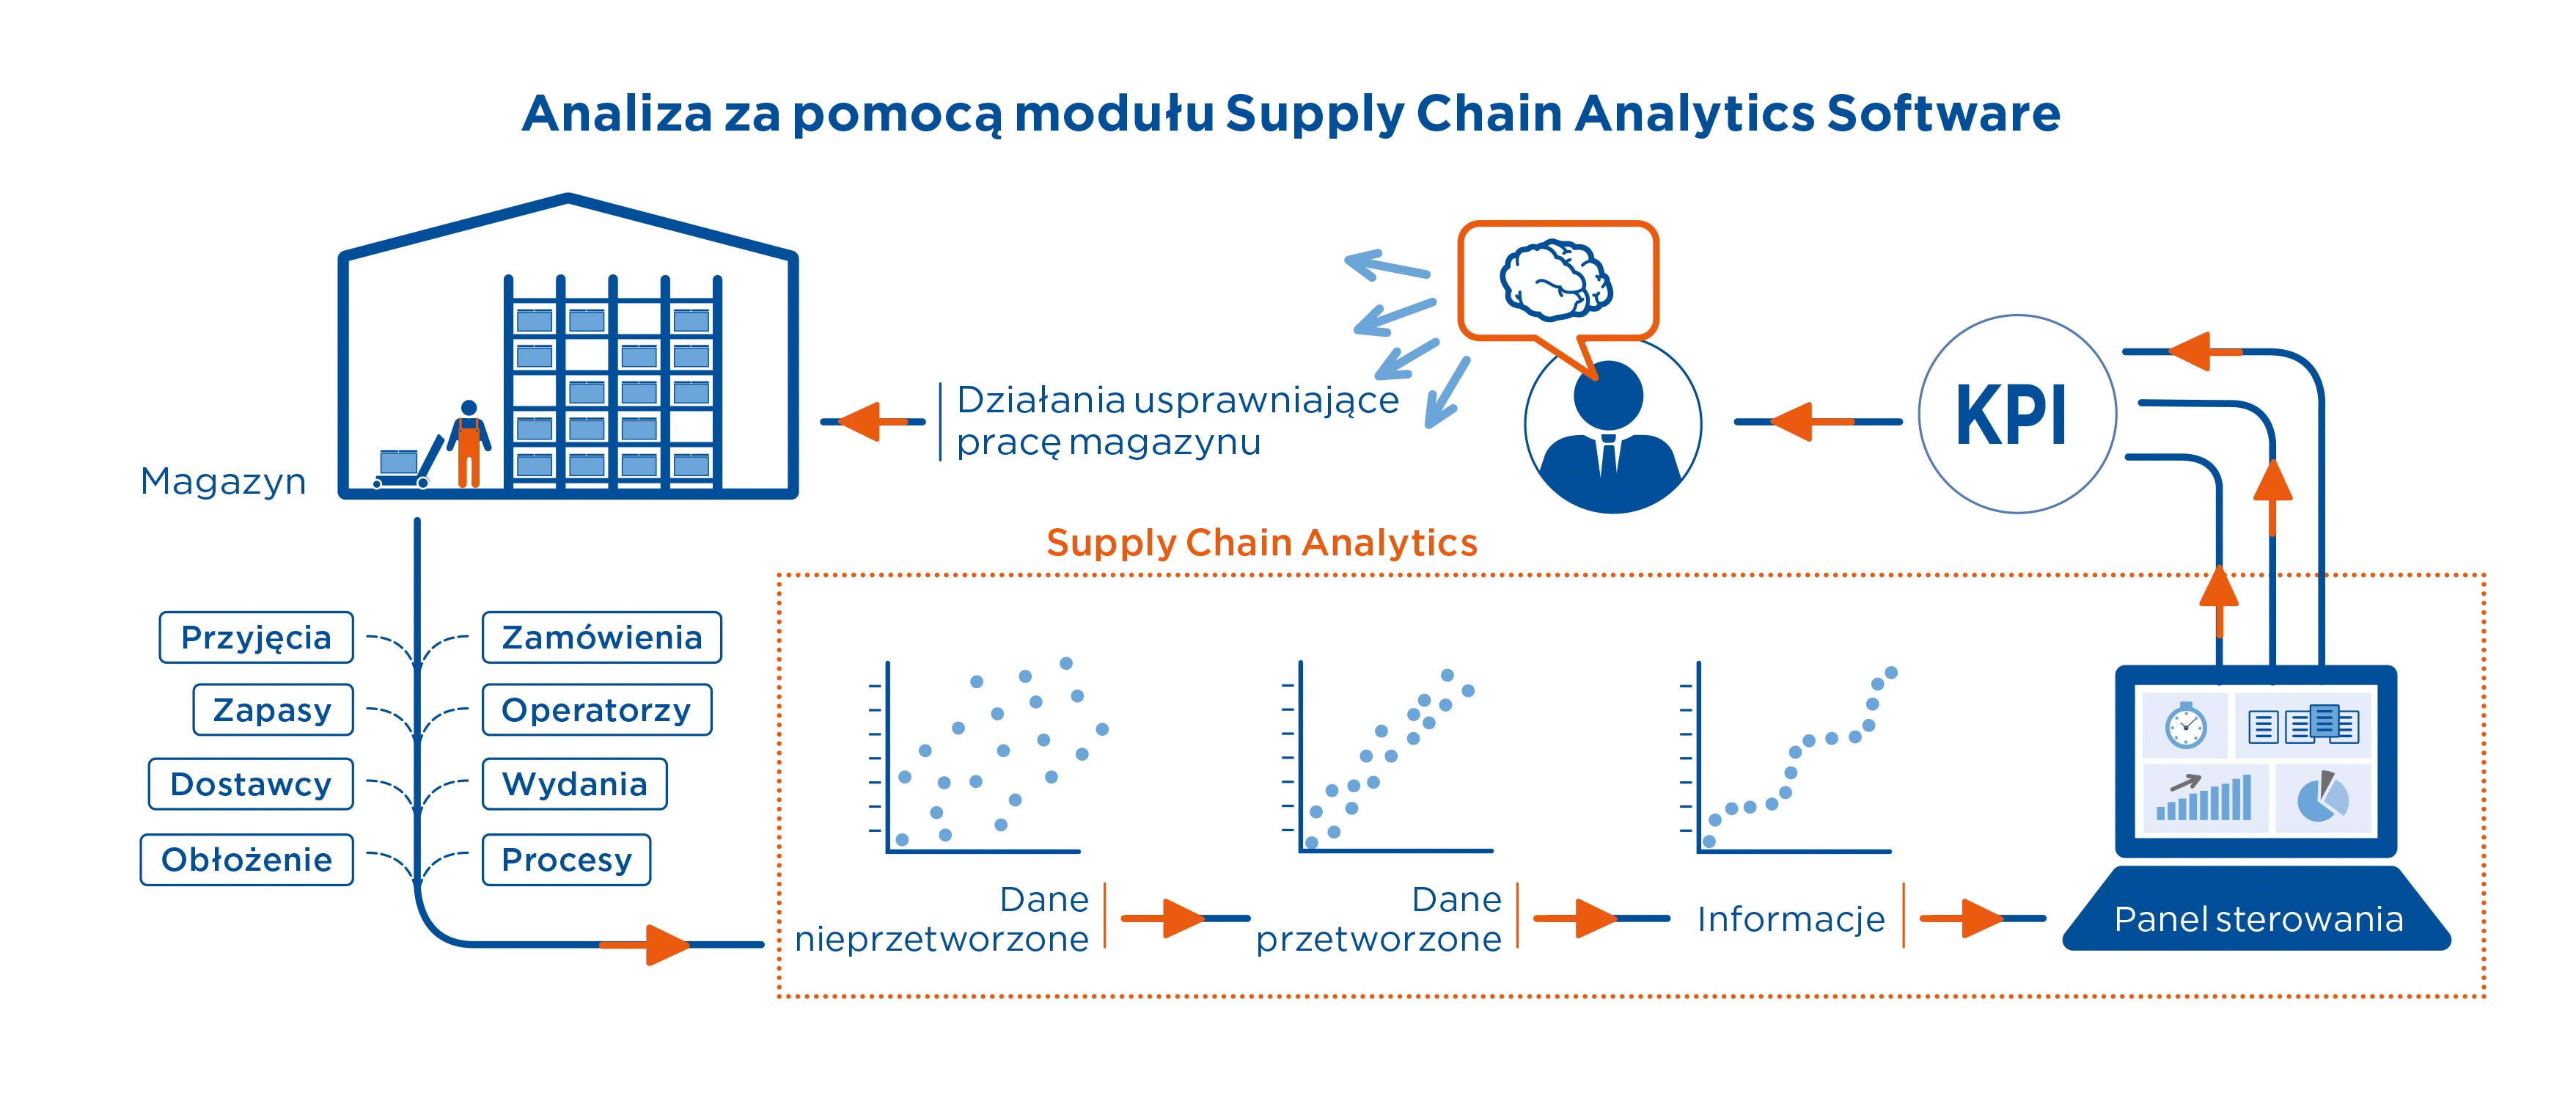 Analiza za pomocą modułu Supply Chain Analytics Software